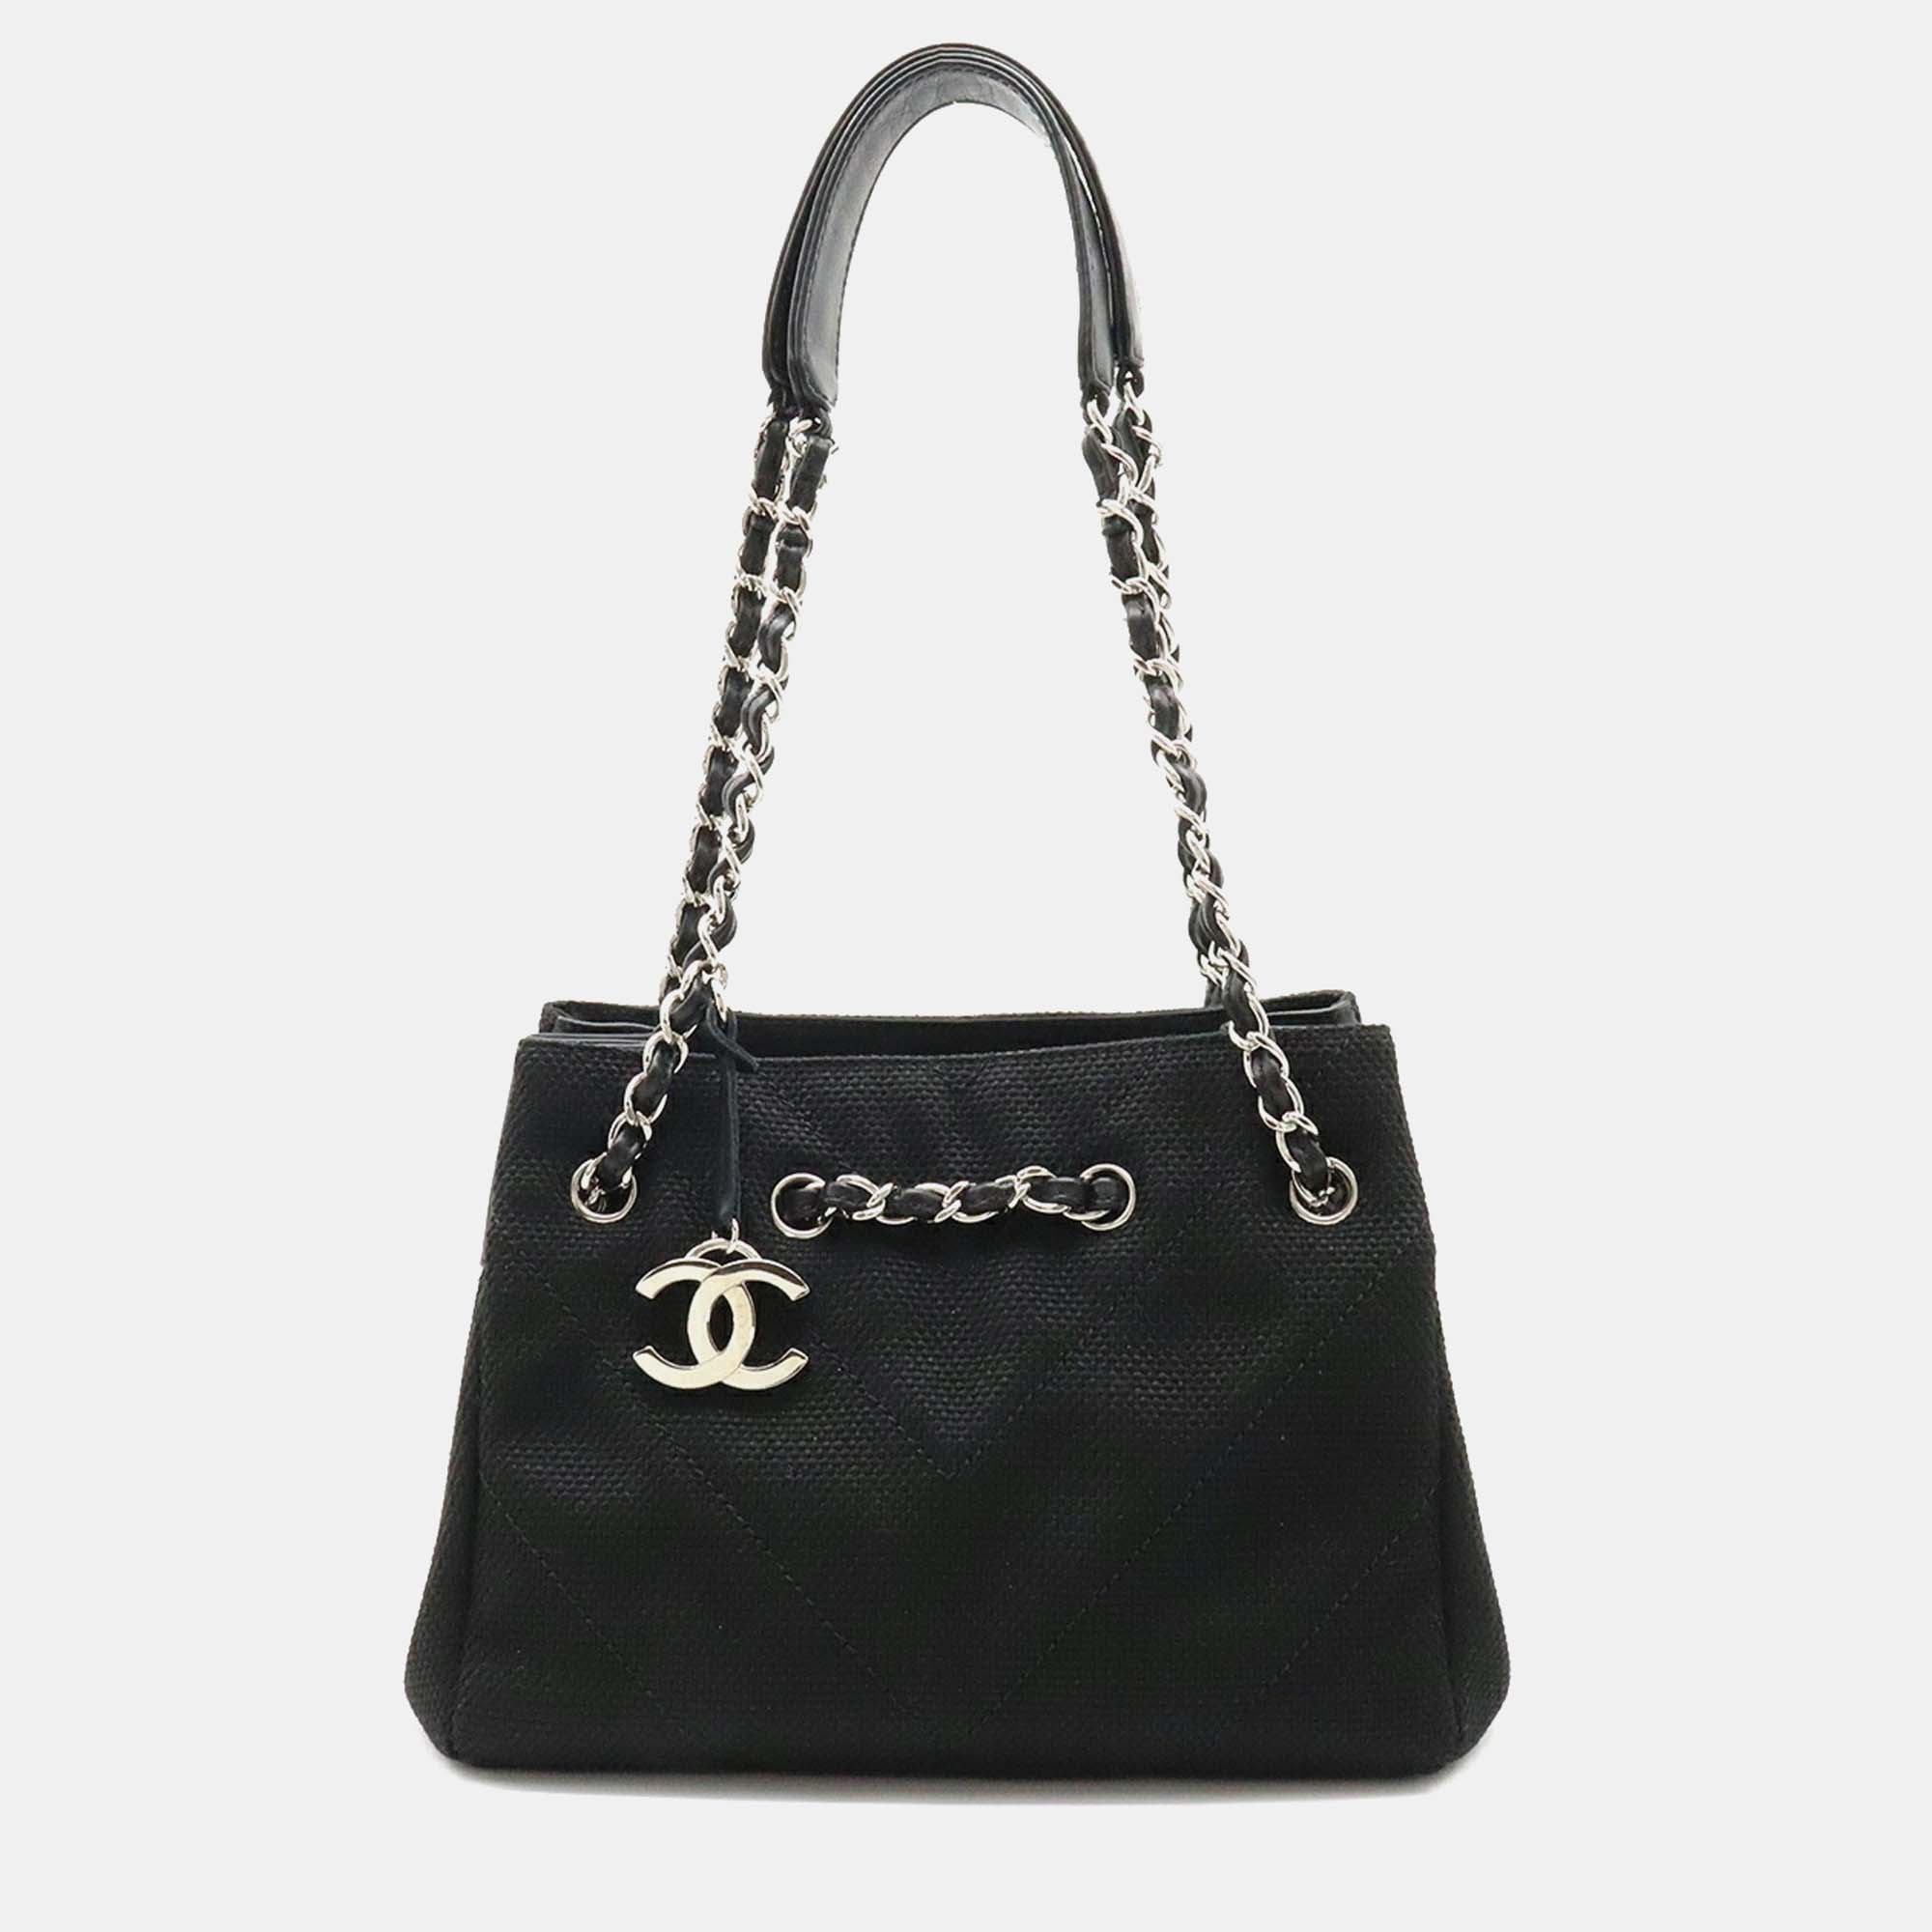 Chanel black canvas/leather chevron cc tote bag